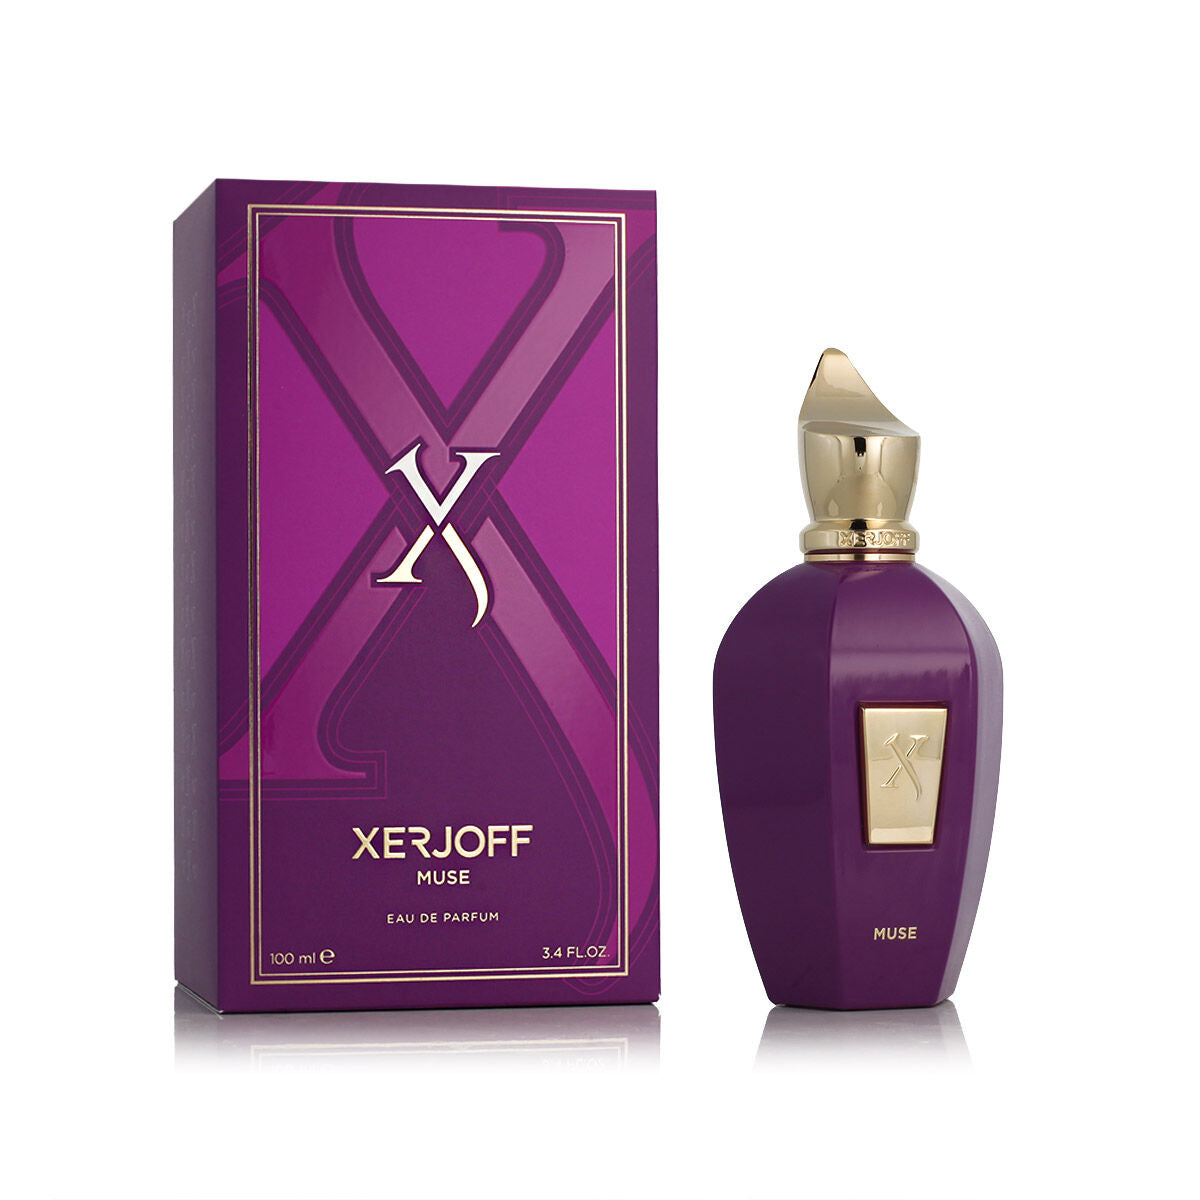 Kaufe Unisex-Parfüm Xerjoff Muse EDP 100 ml bei AWK Flagship um € 253.00